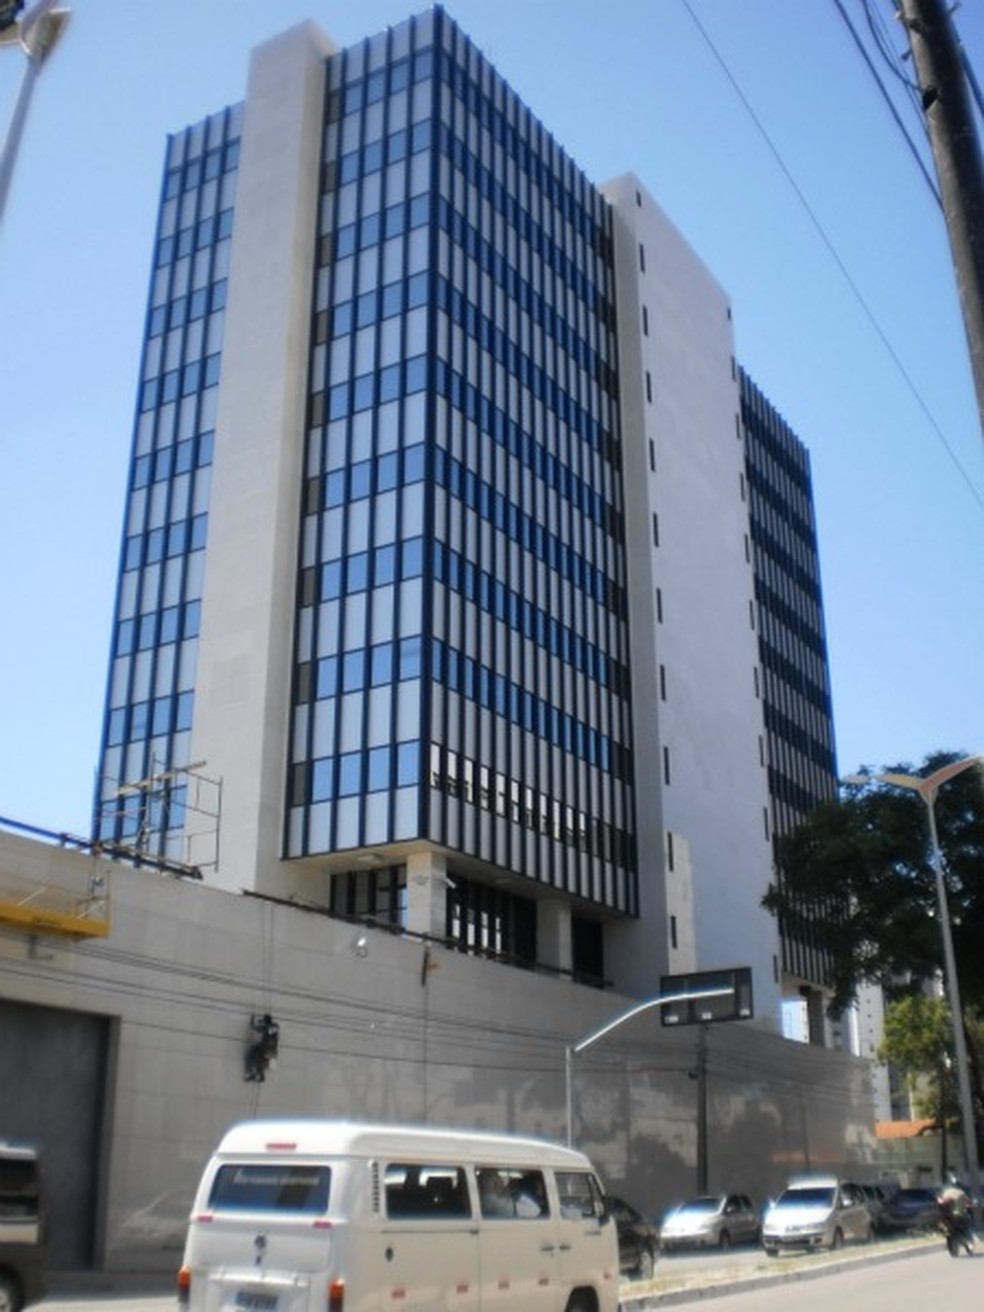 Prédio do Banco Central na avenida Heráclito Graça, em Fortaleza — Foto: Leonardo Heffer/G1